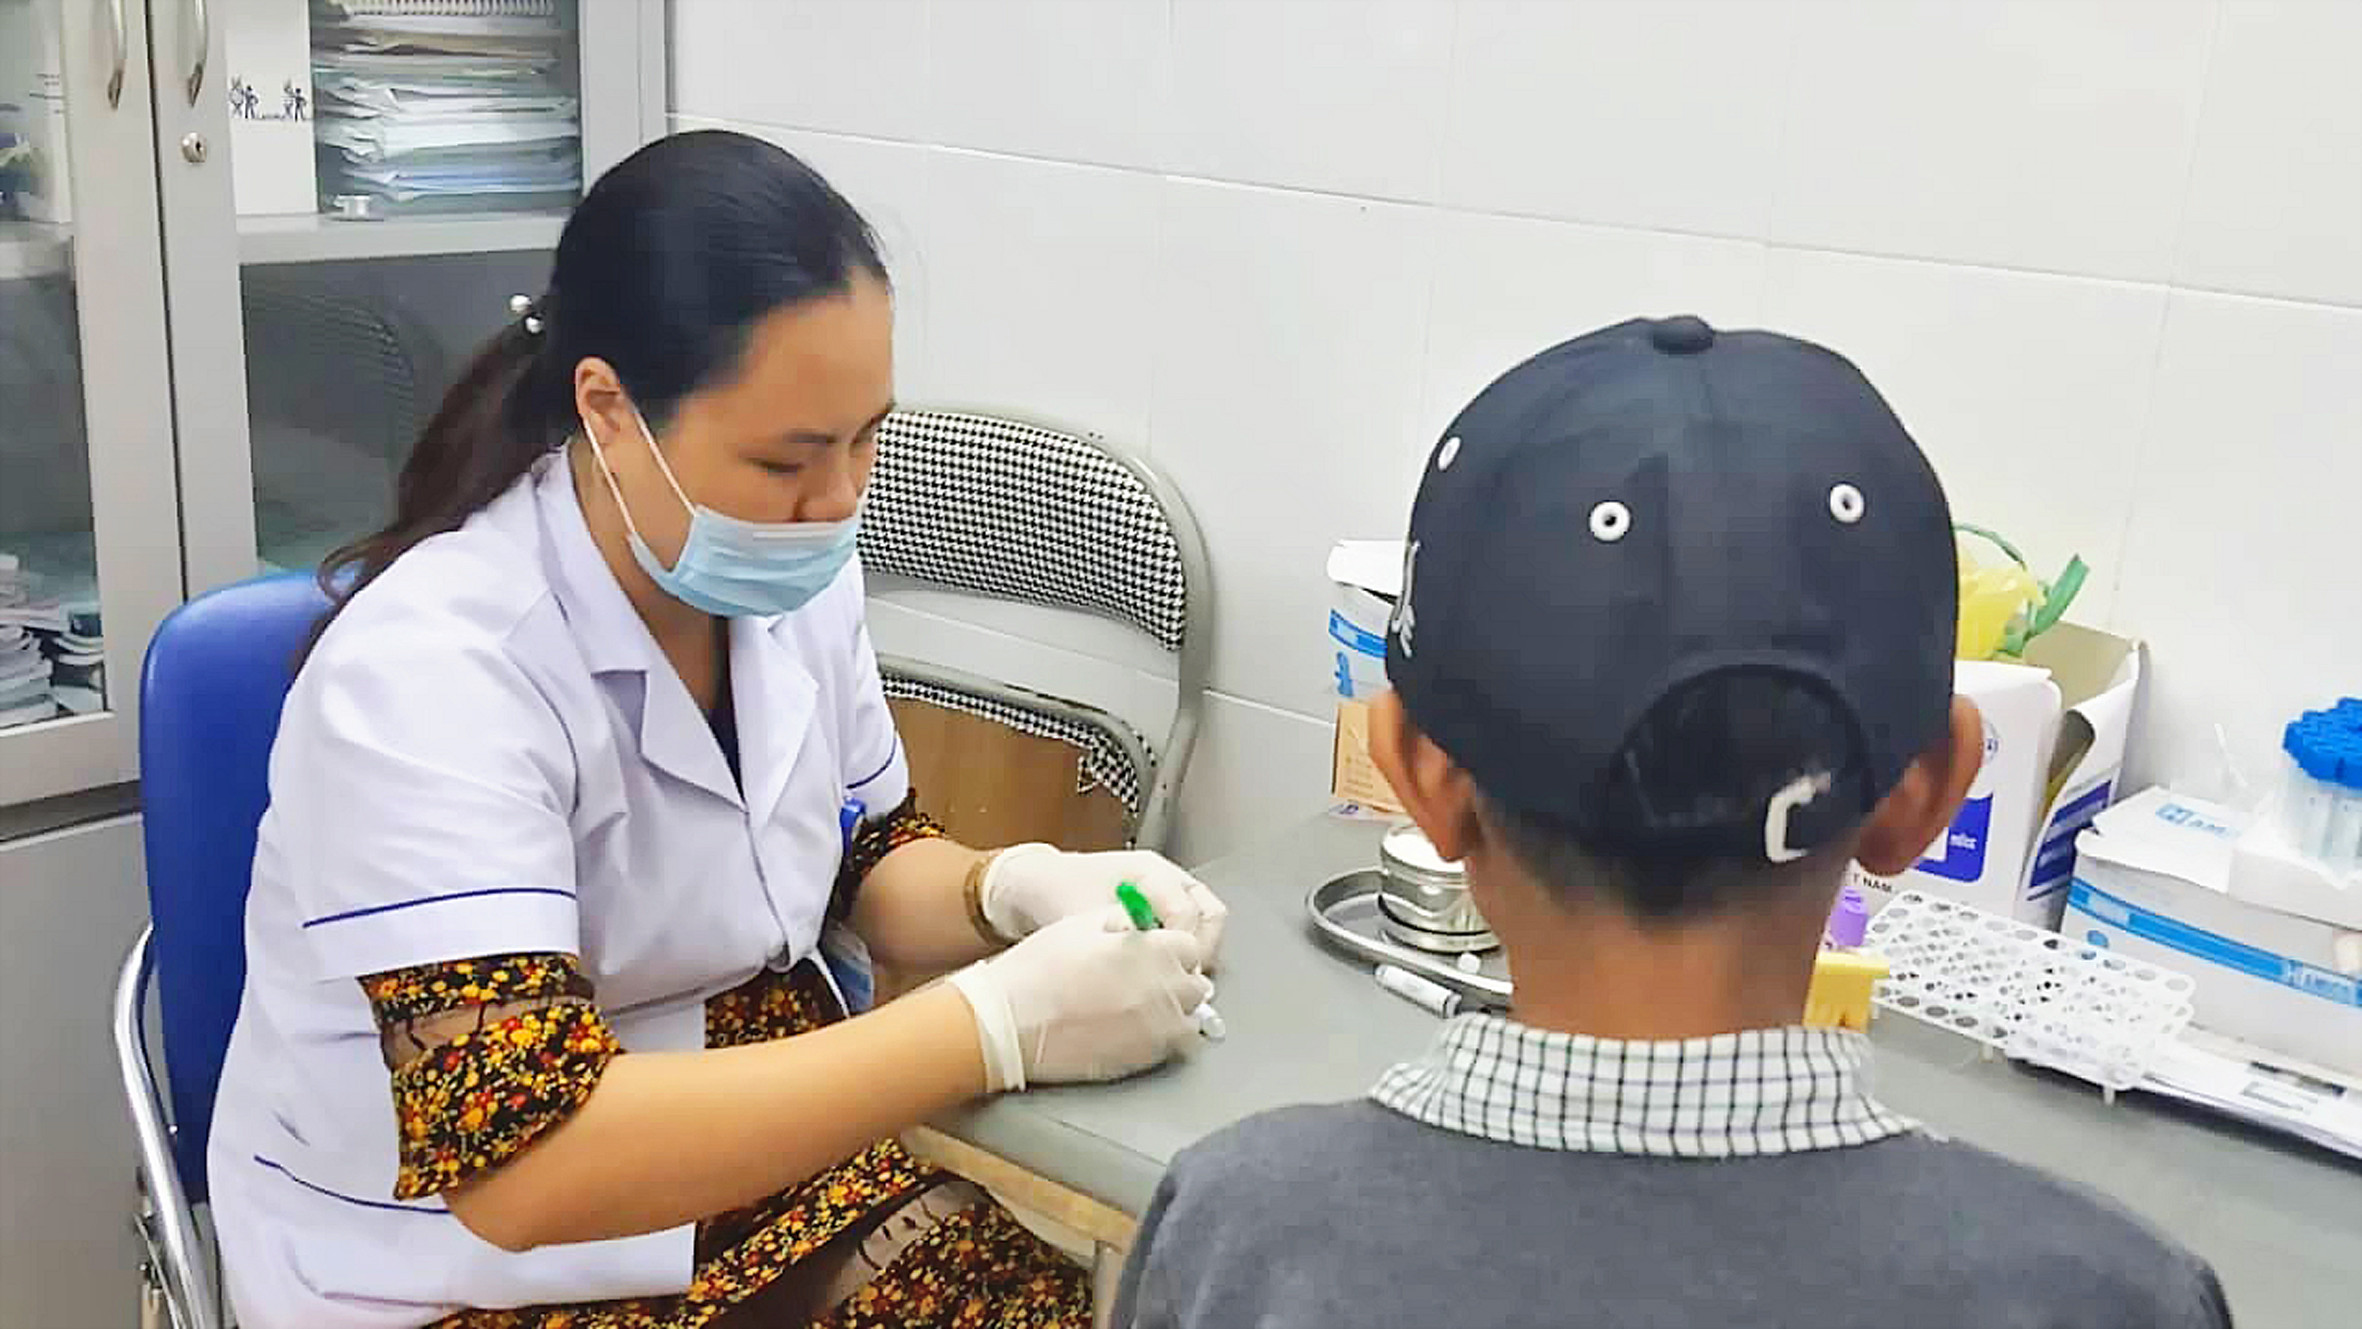 Kiểm tra sức khỏe cho bệnh nhân nhi tại phòng khám dành cho những người có HIV/AIDS, Bệnh viện Sản Nhi Nghệ An. Ảnh: Song Hoàng